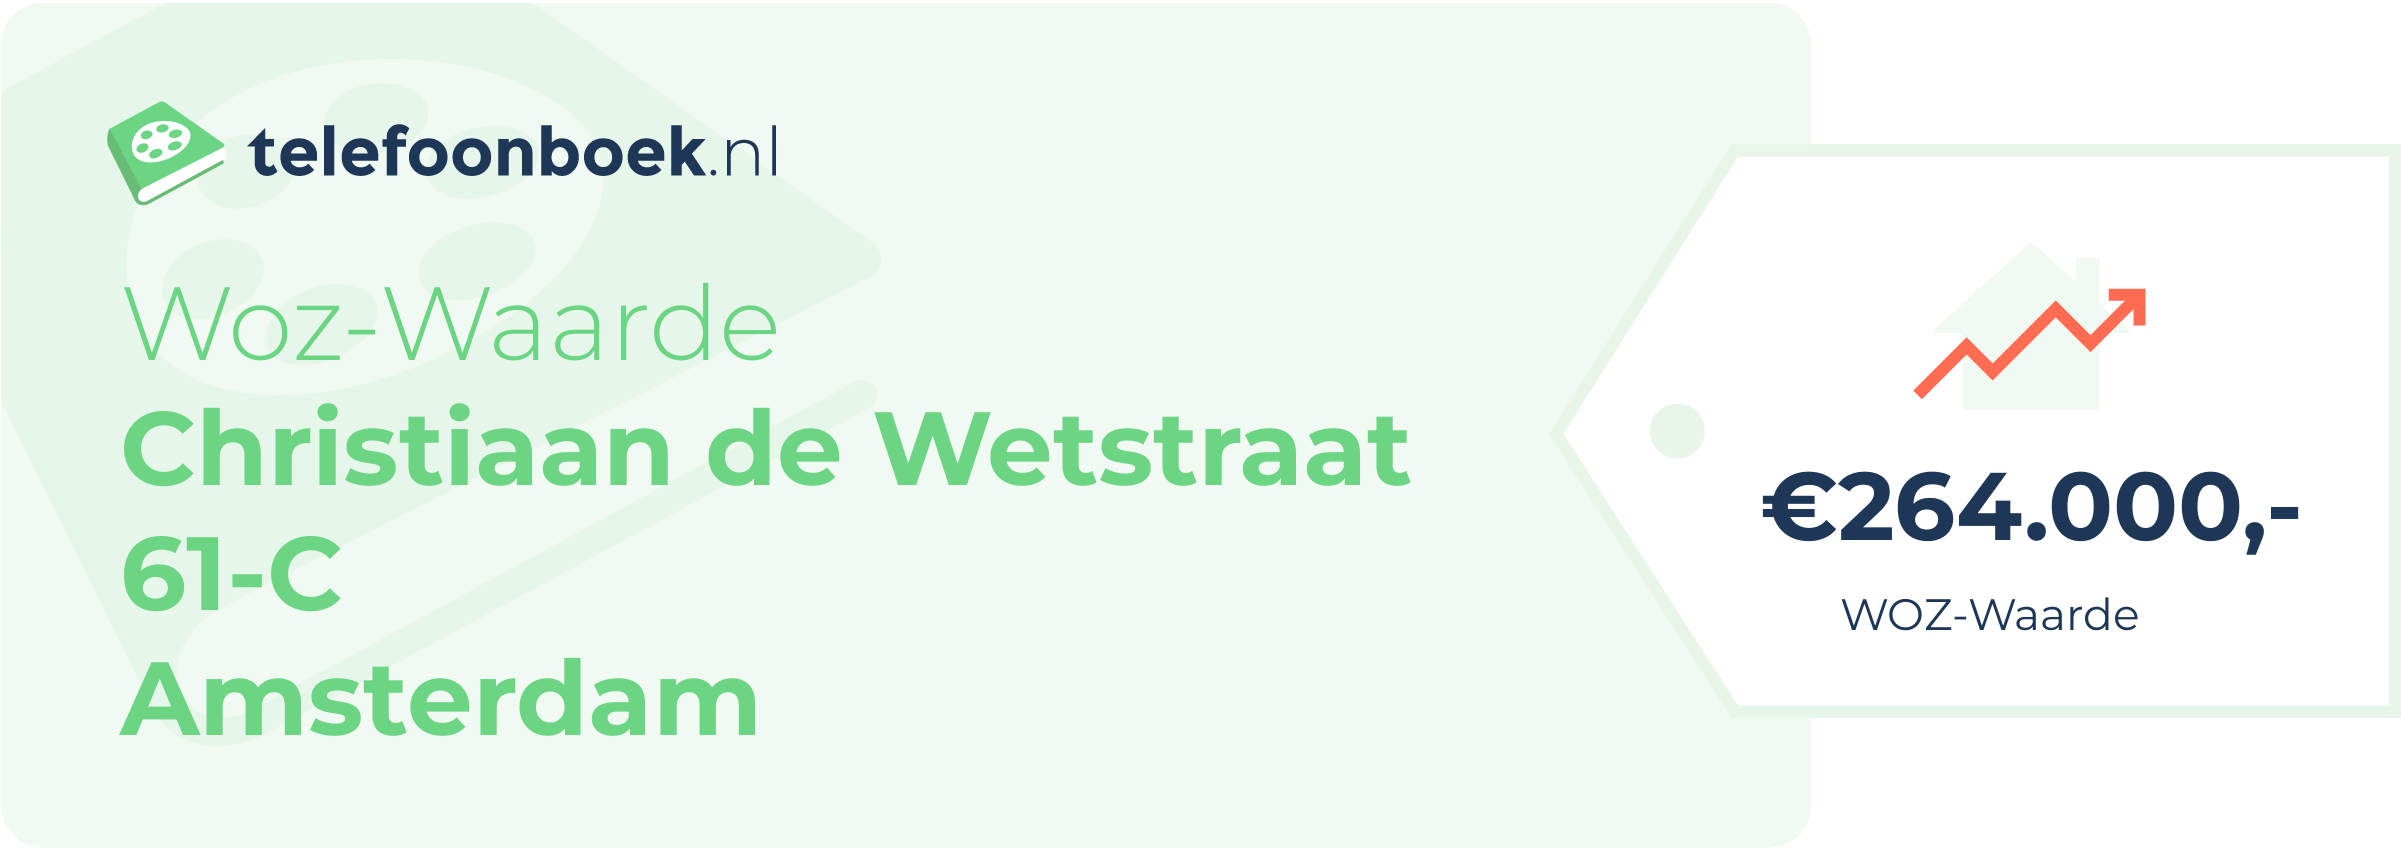 WOZ-waarde Christiaan De Wetstraat 61-C Amsterdam